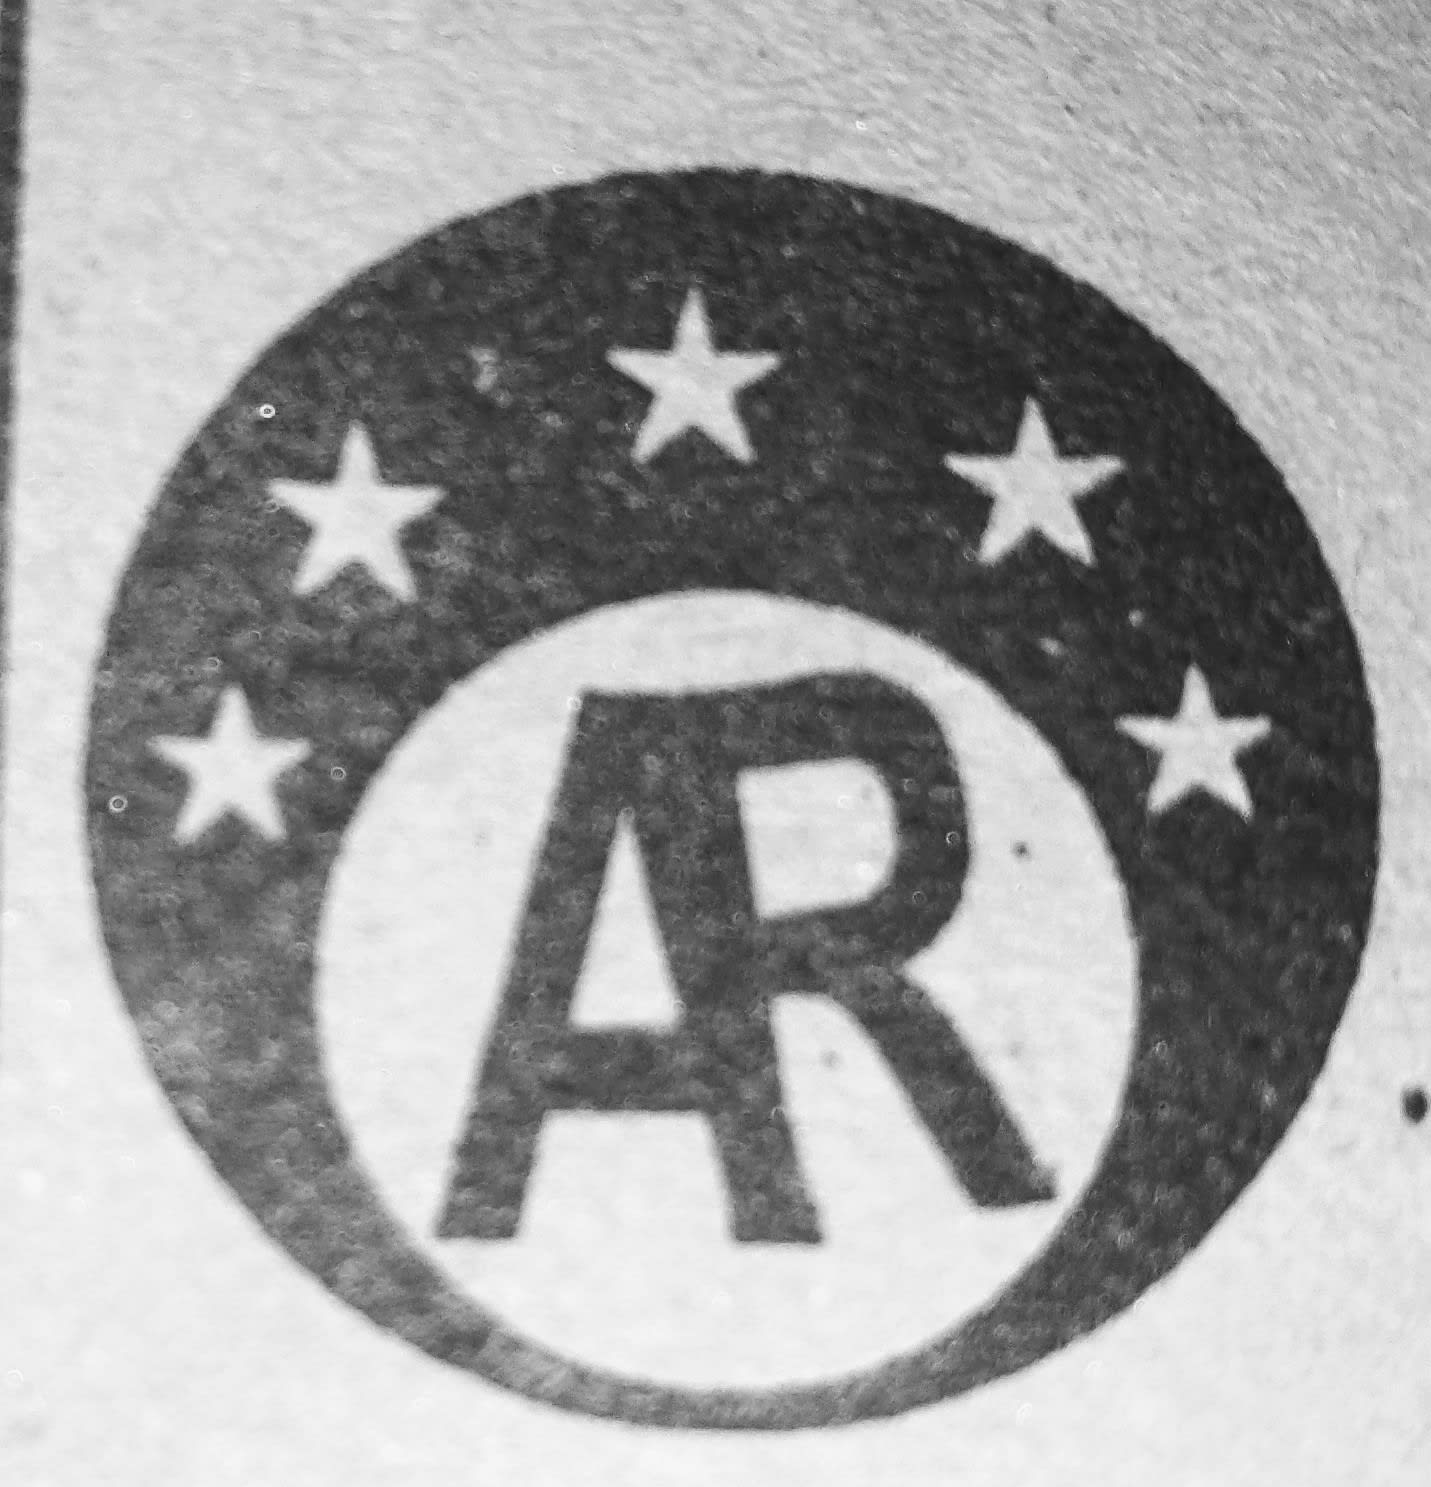 A.R Enterprises